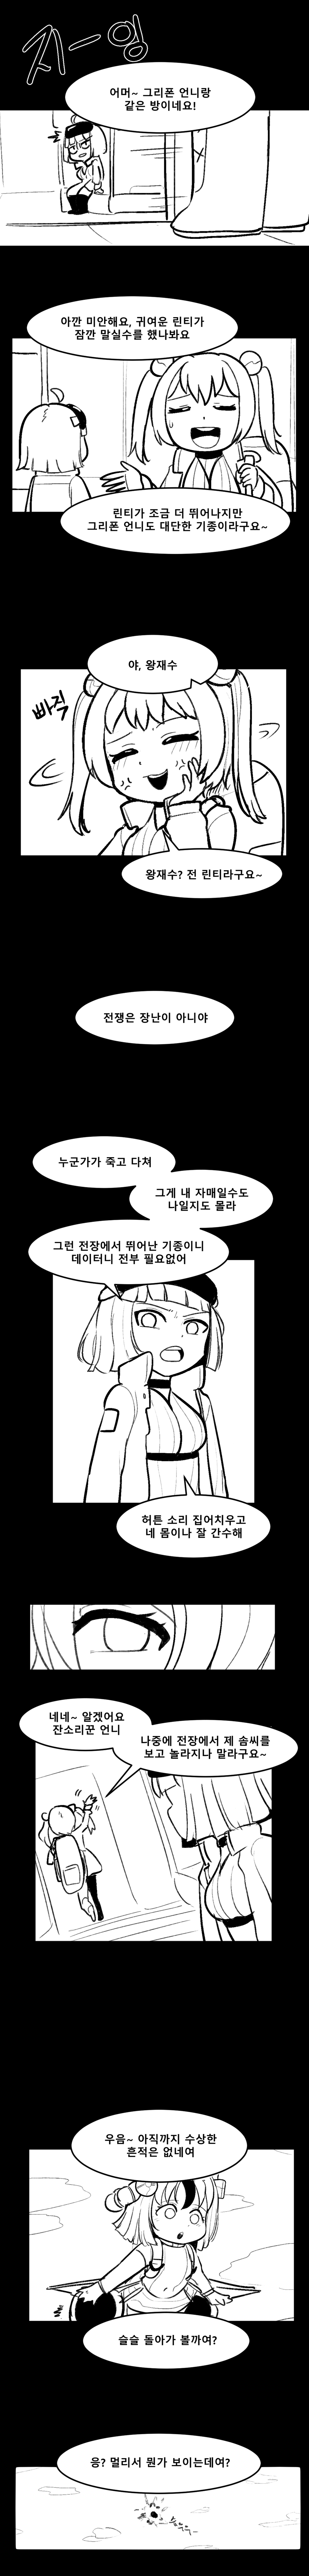 멸망대회 만화3.png